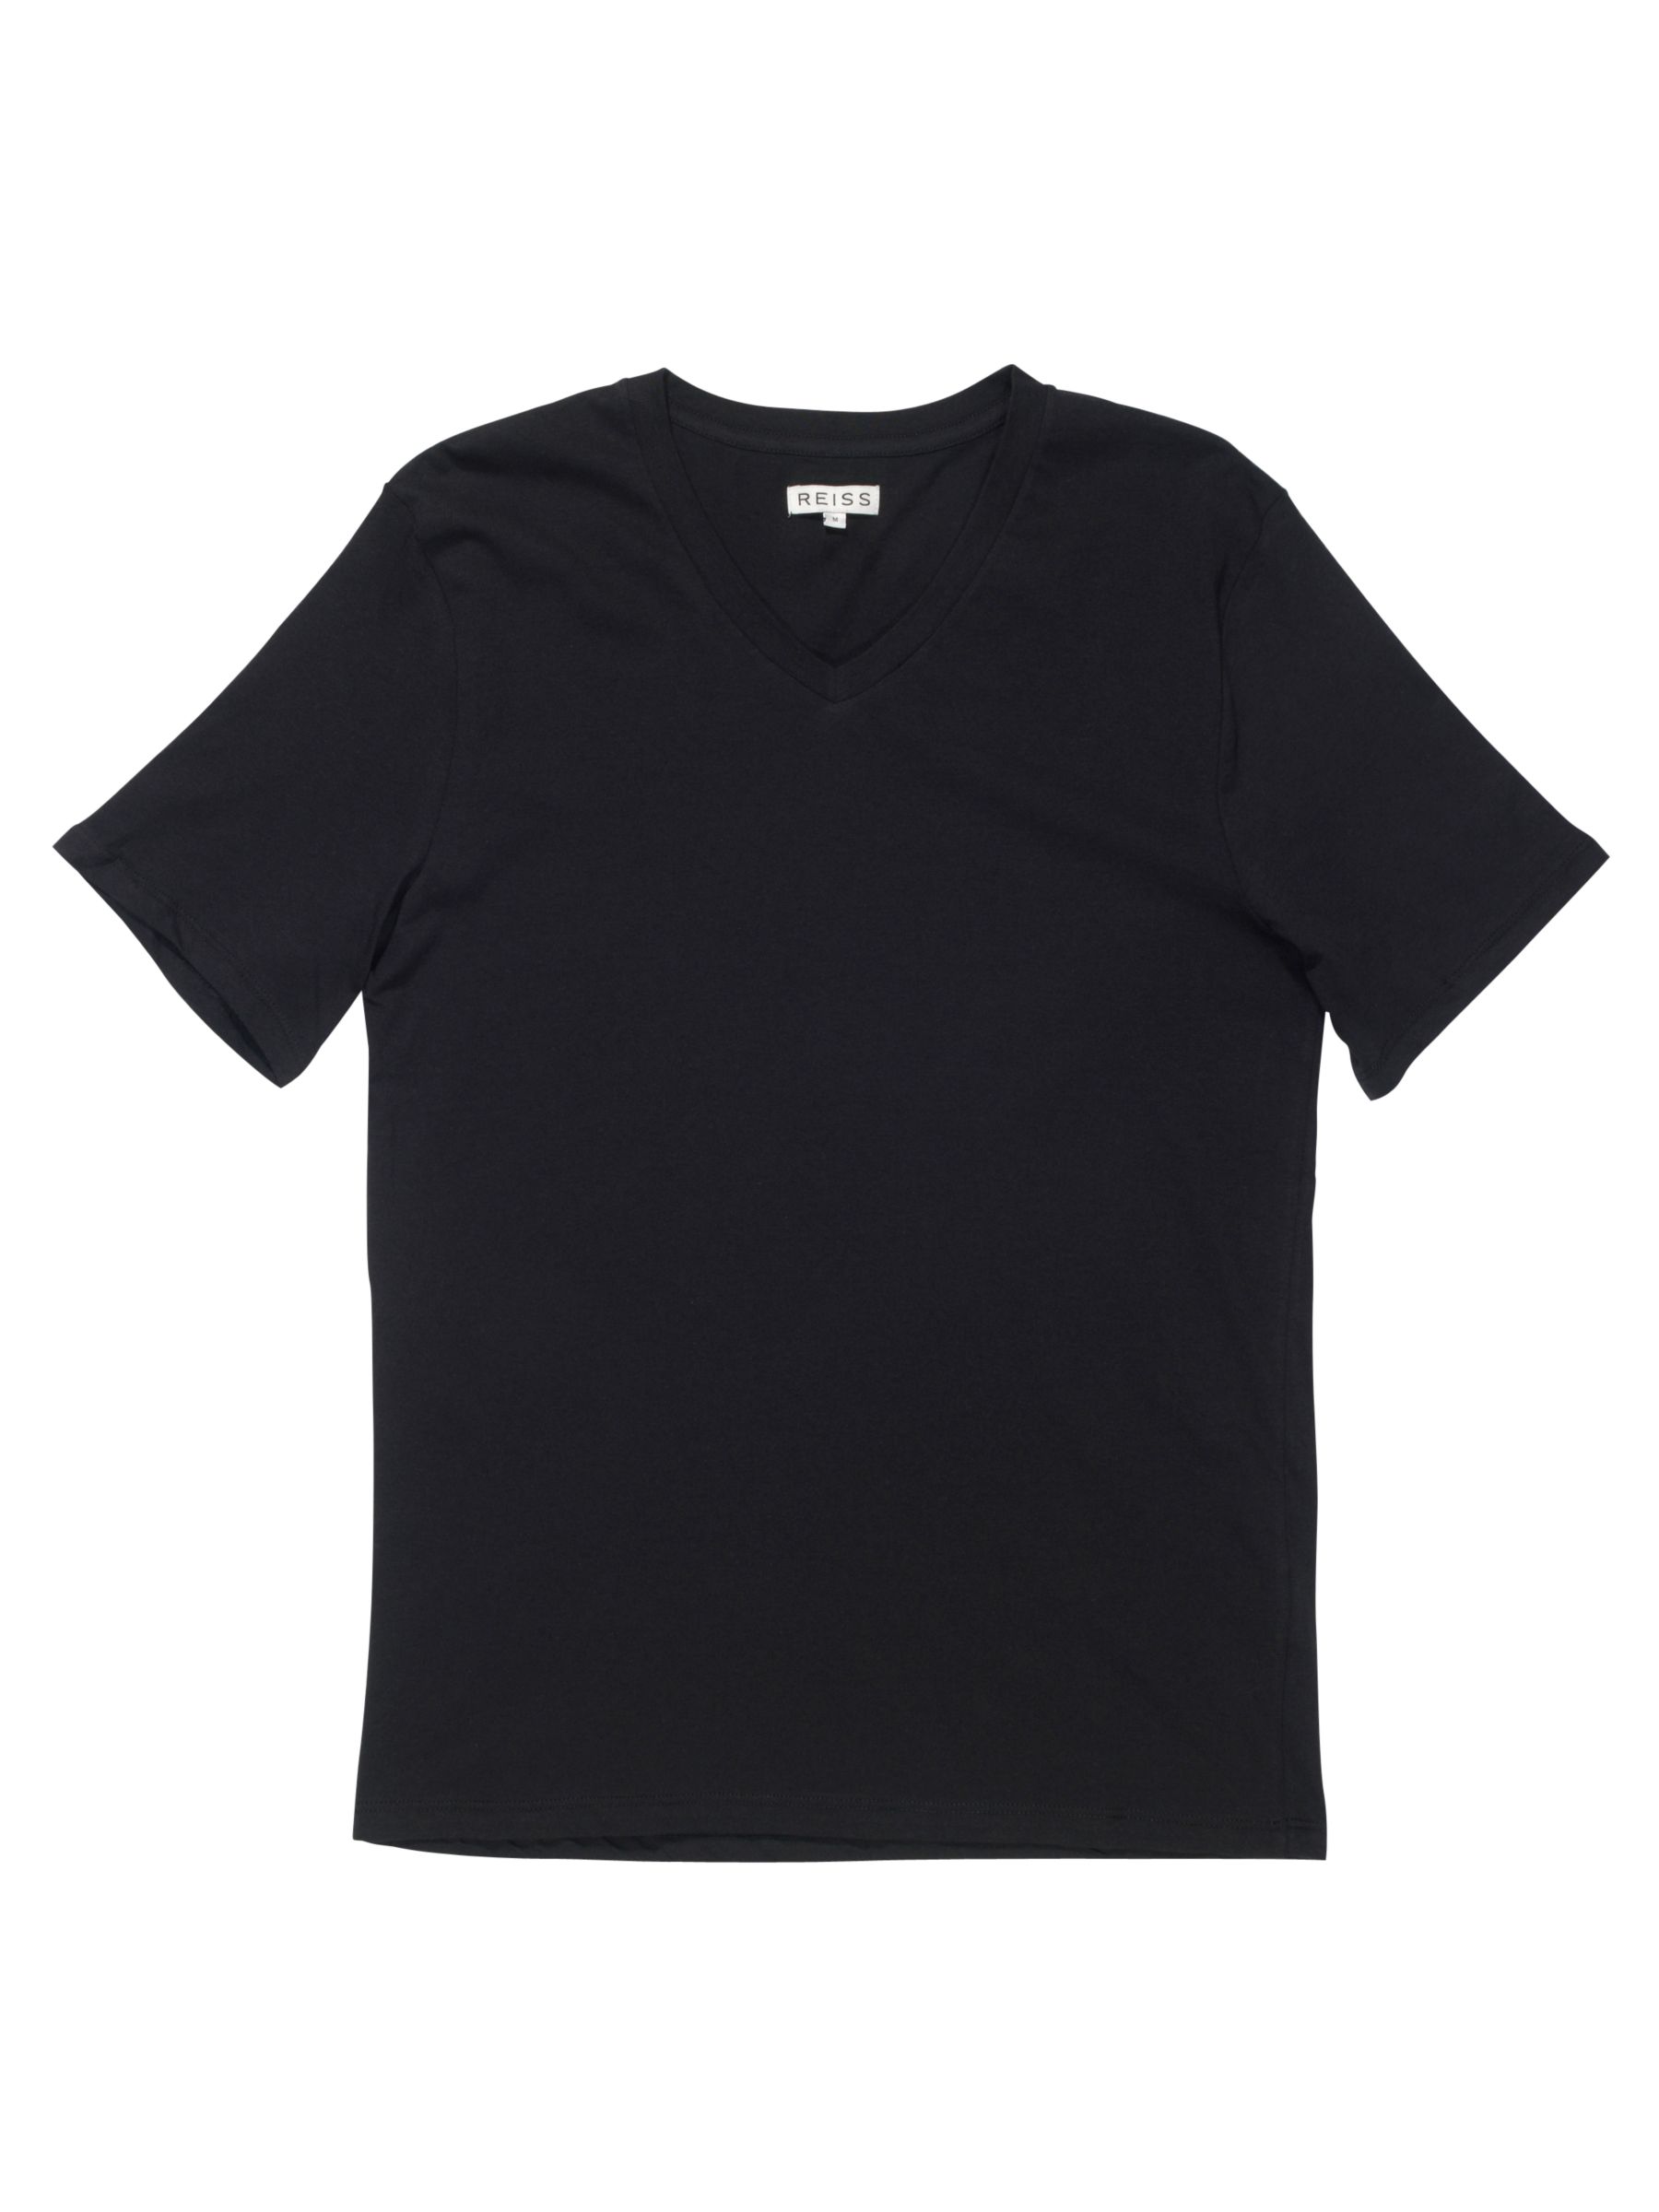 Reiss Dayton Basic V Neck T-Shirt, Black